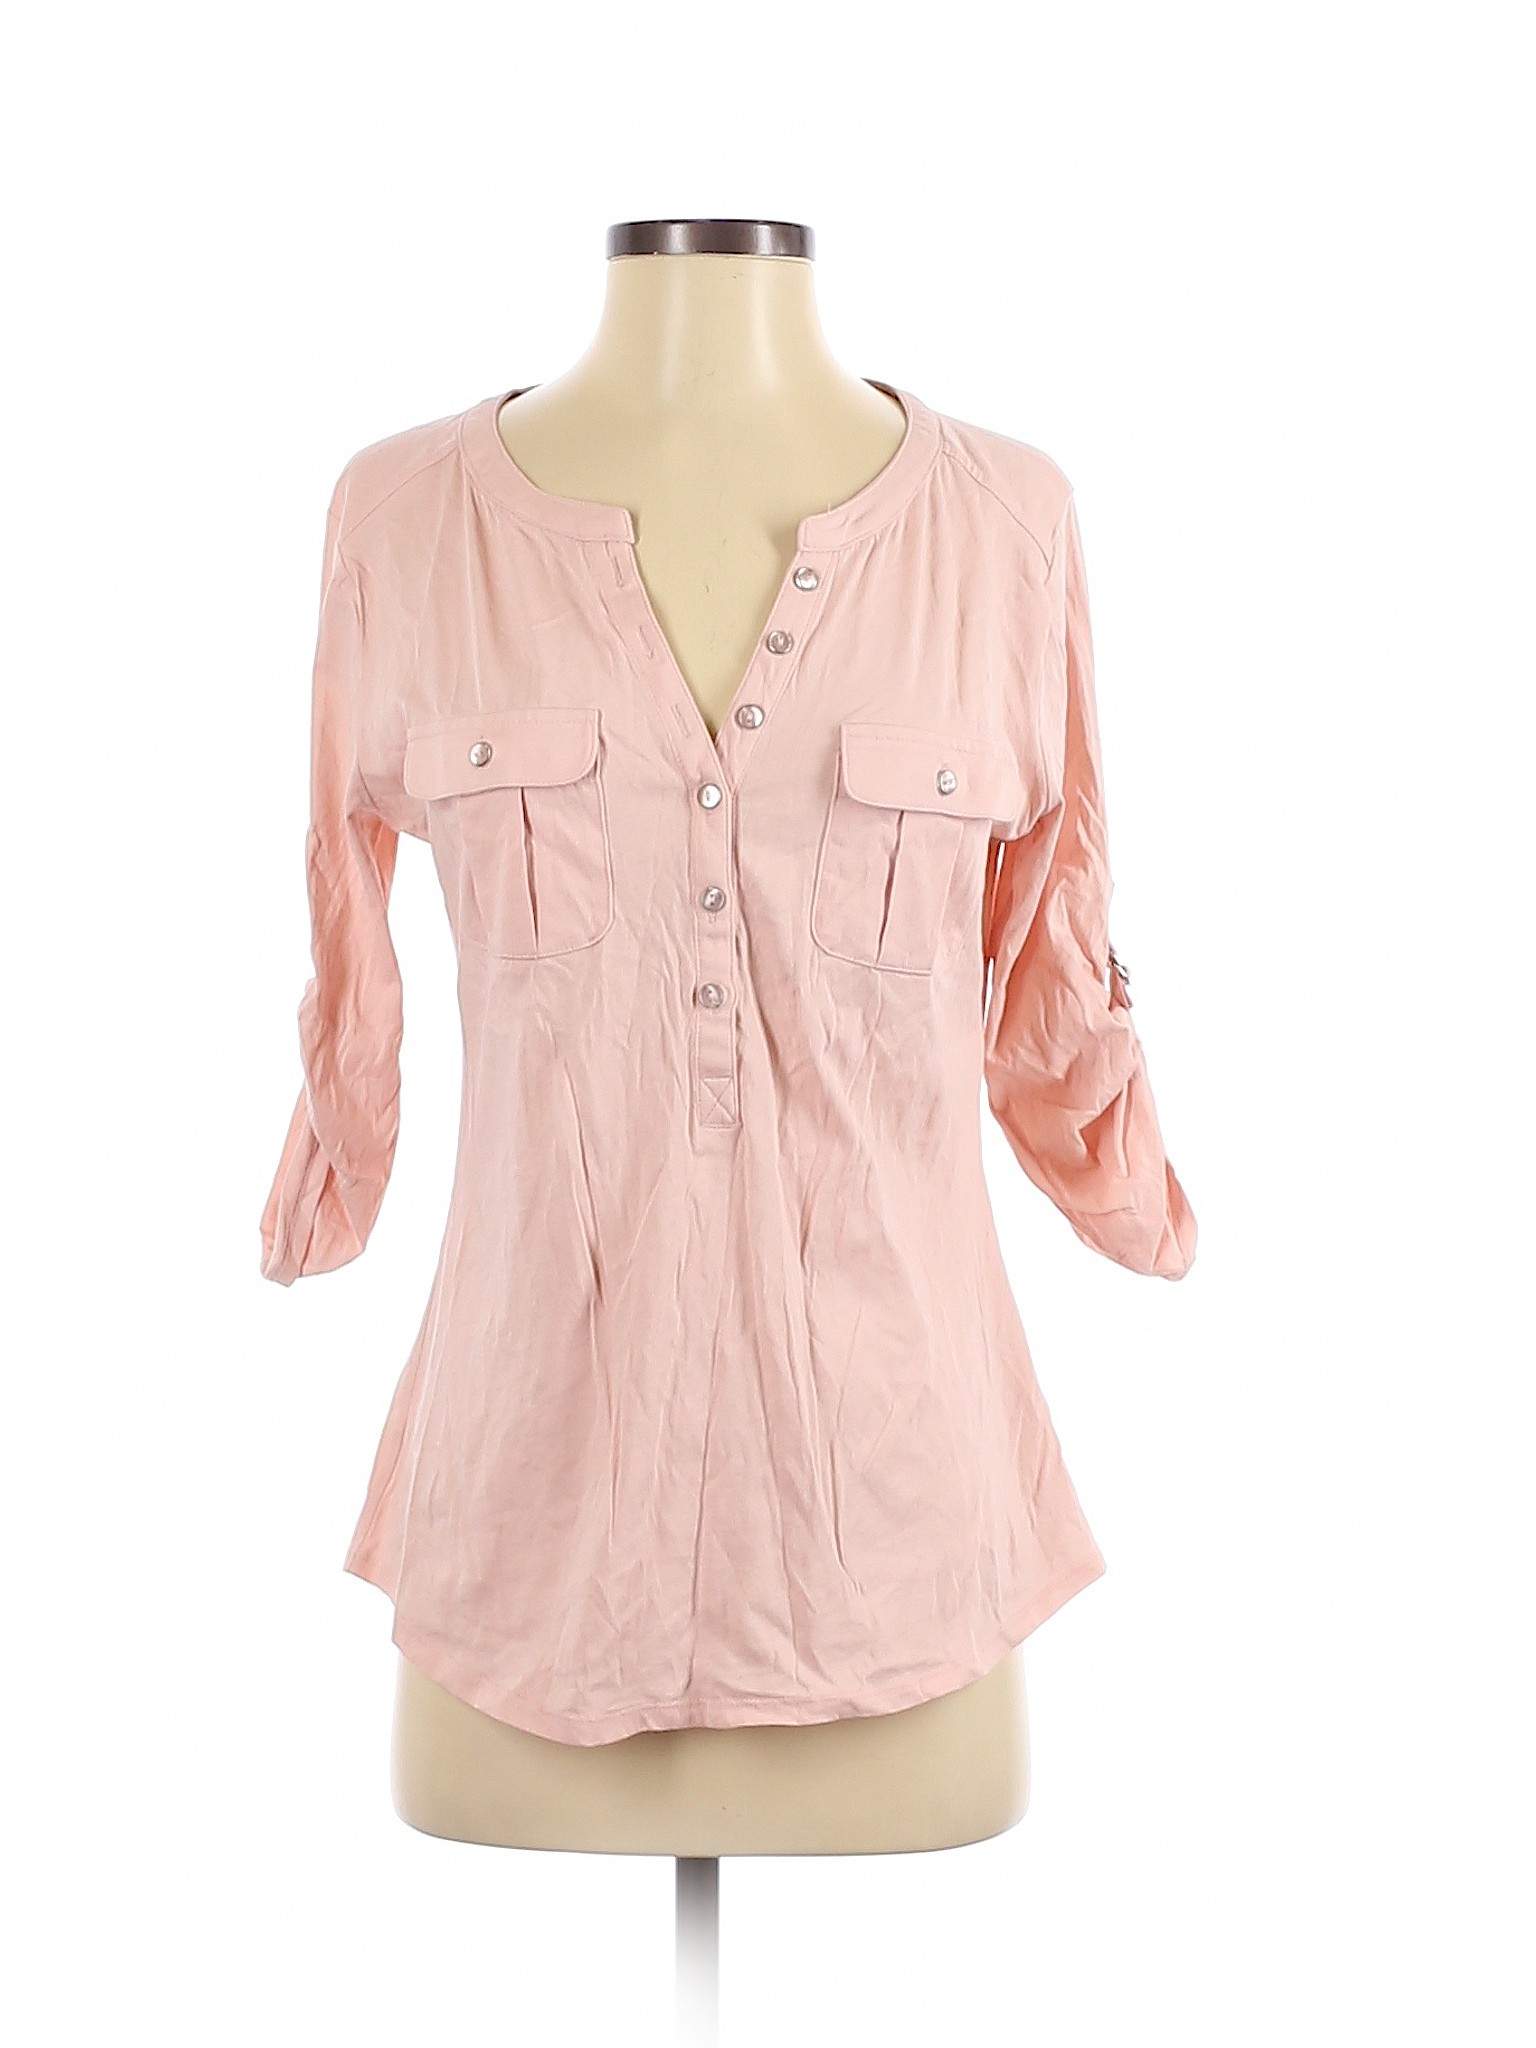 NY&C Women Pink Short Sleeve Top S | eBay